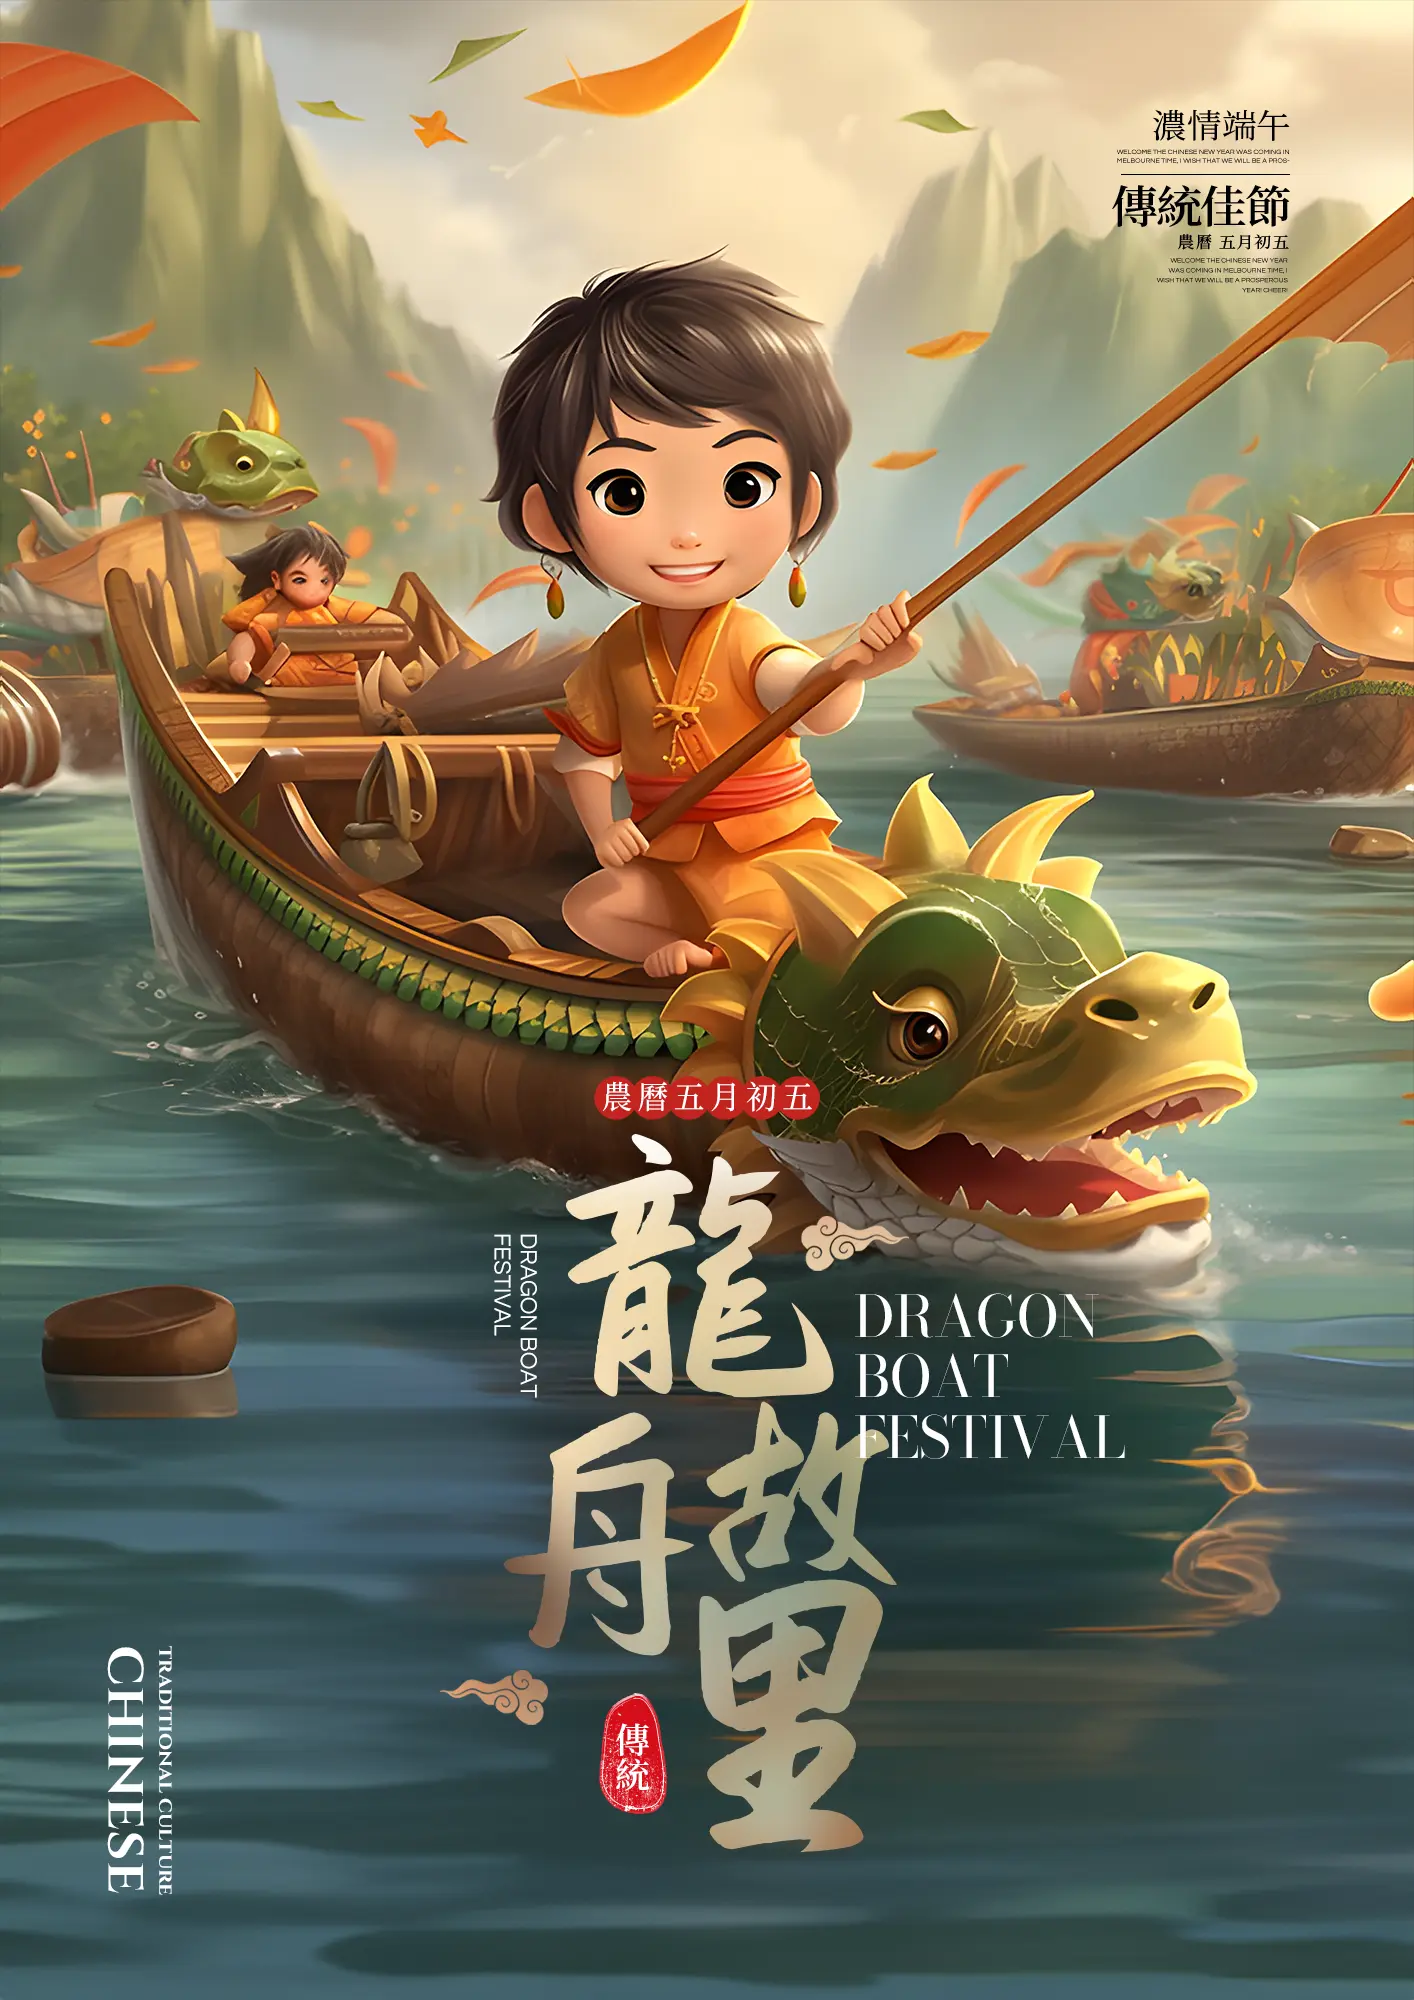 中国传统节日端午节赛龙舟卡通插画宣传海报图片